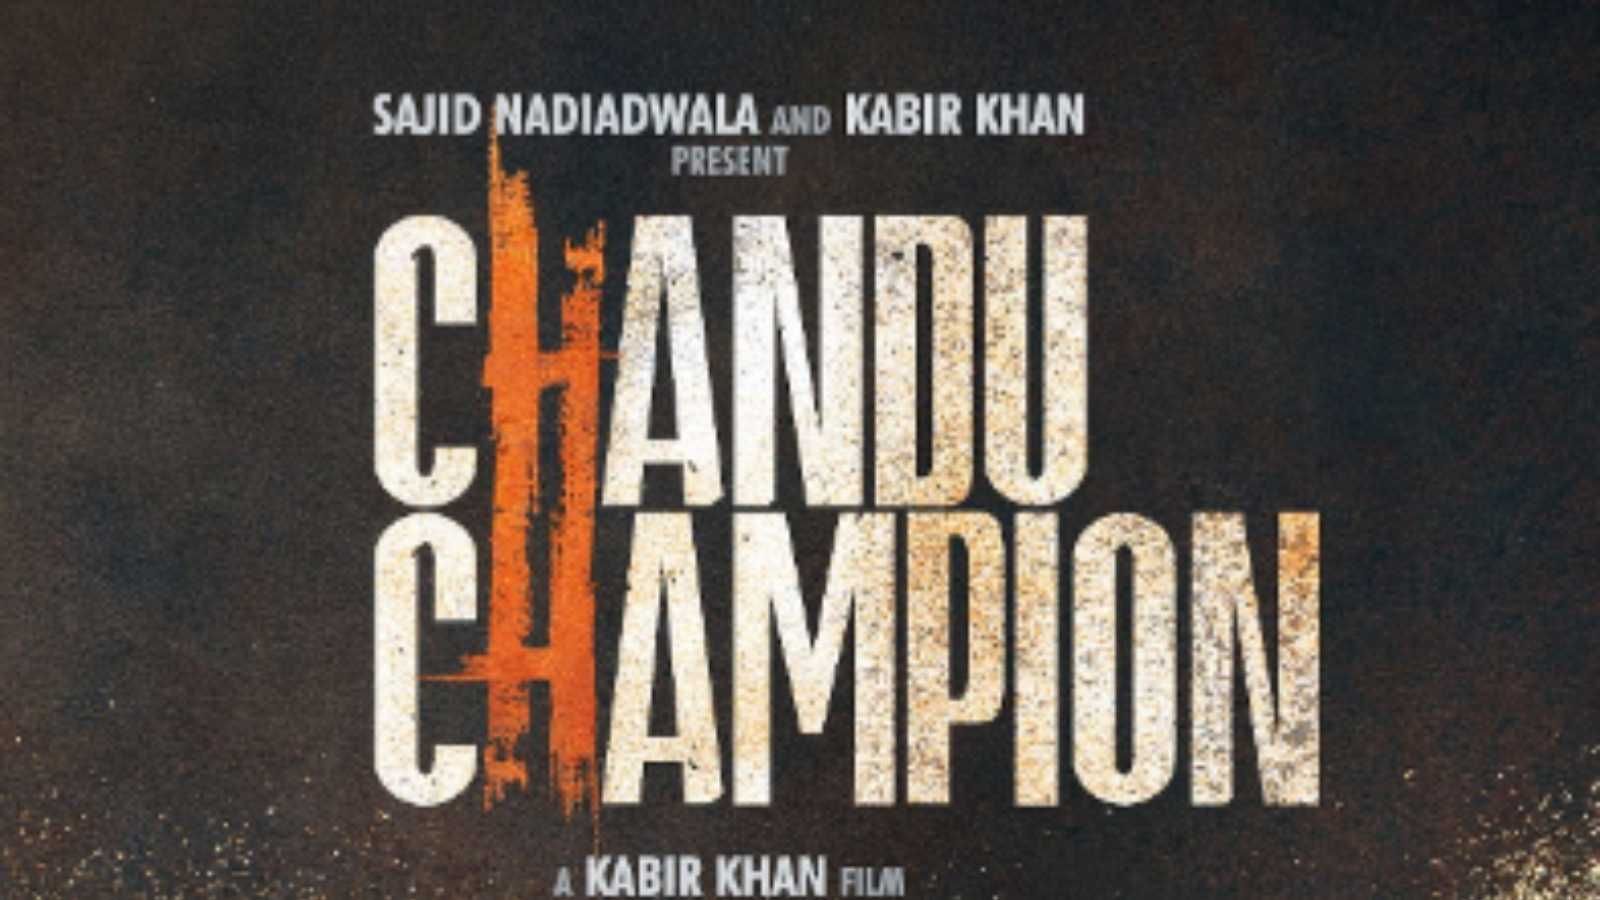 Chandu Champion  Kartik Aaryan